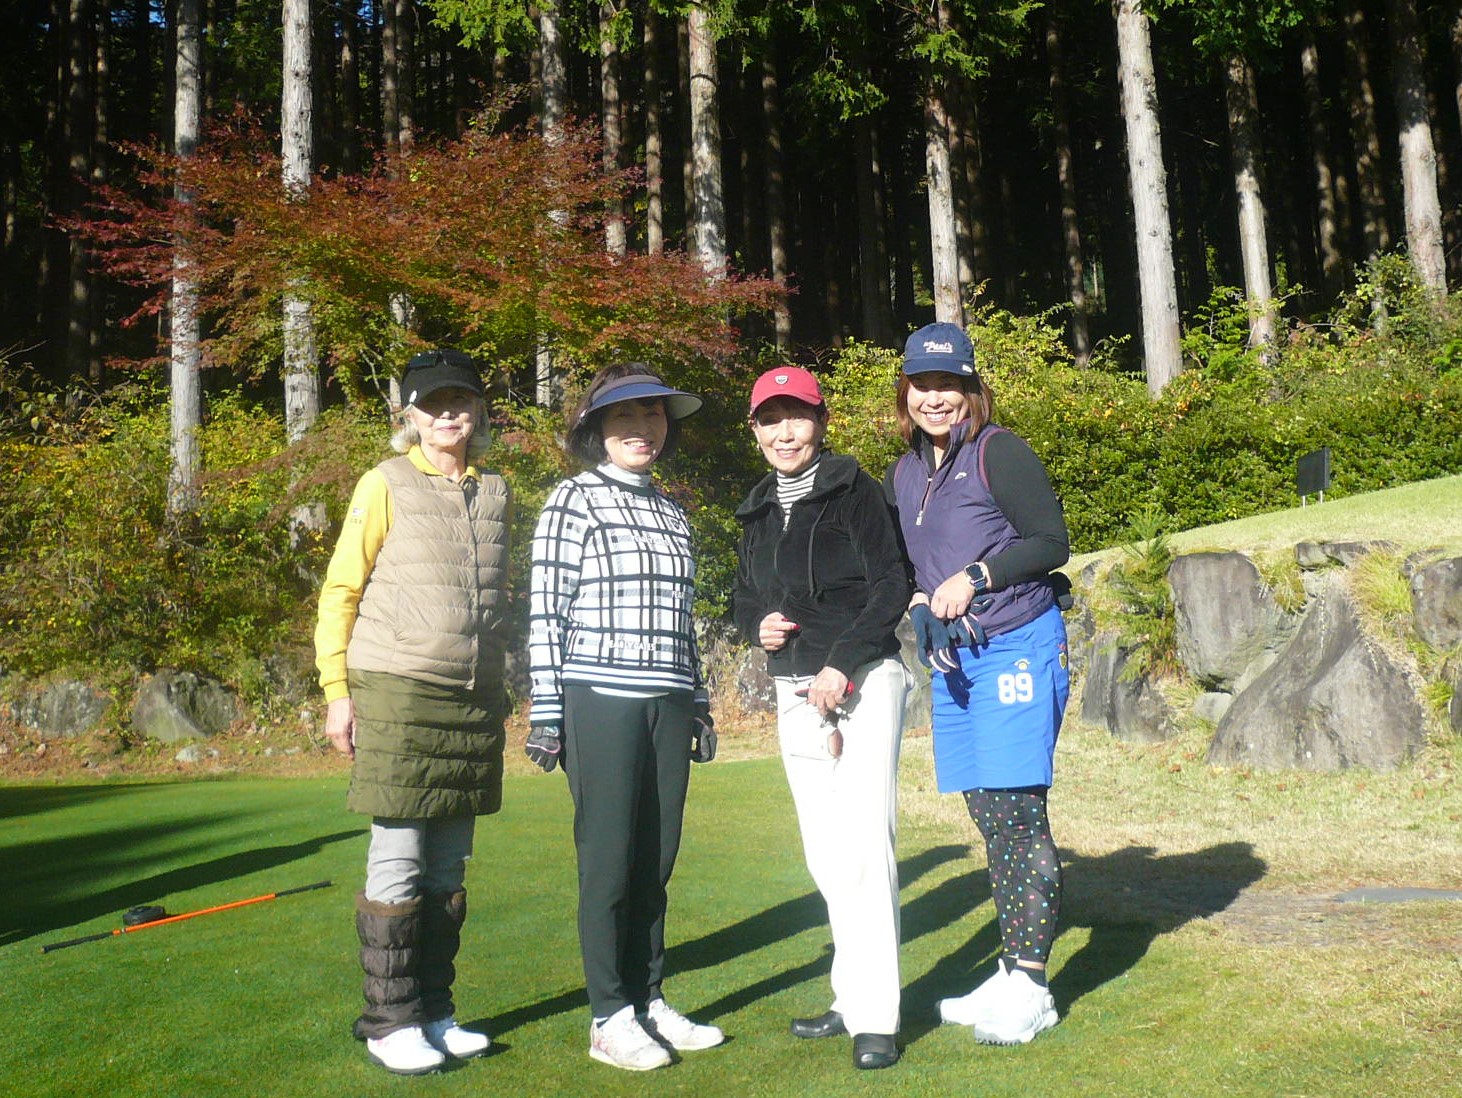 2組は女子だけで組みましたNPゲットした勝俣裕子、小宮、橋本、優勝した勝俣優子